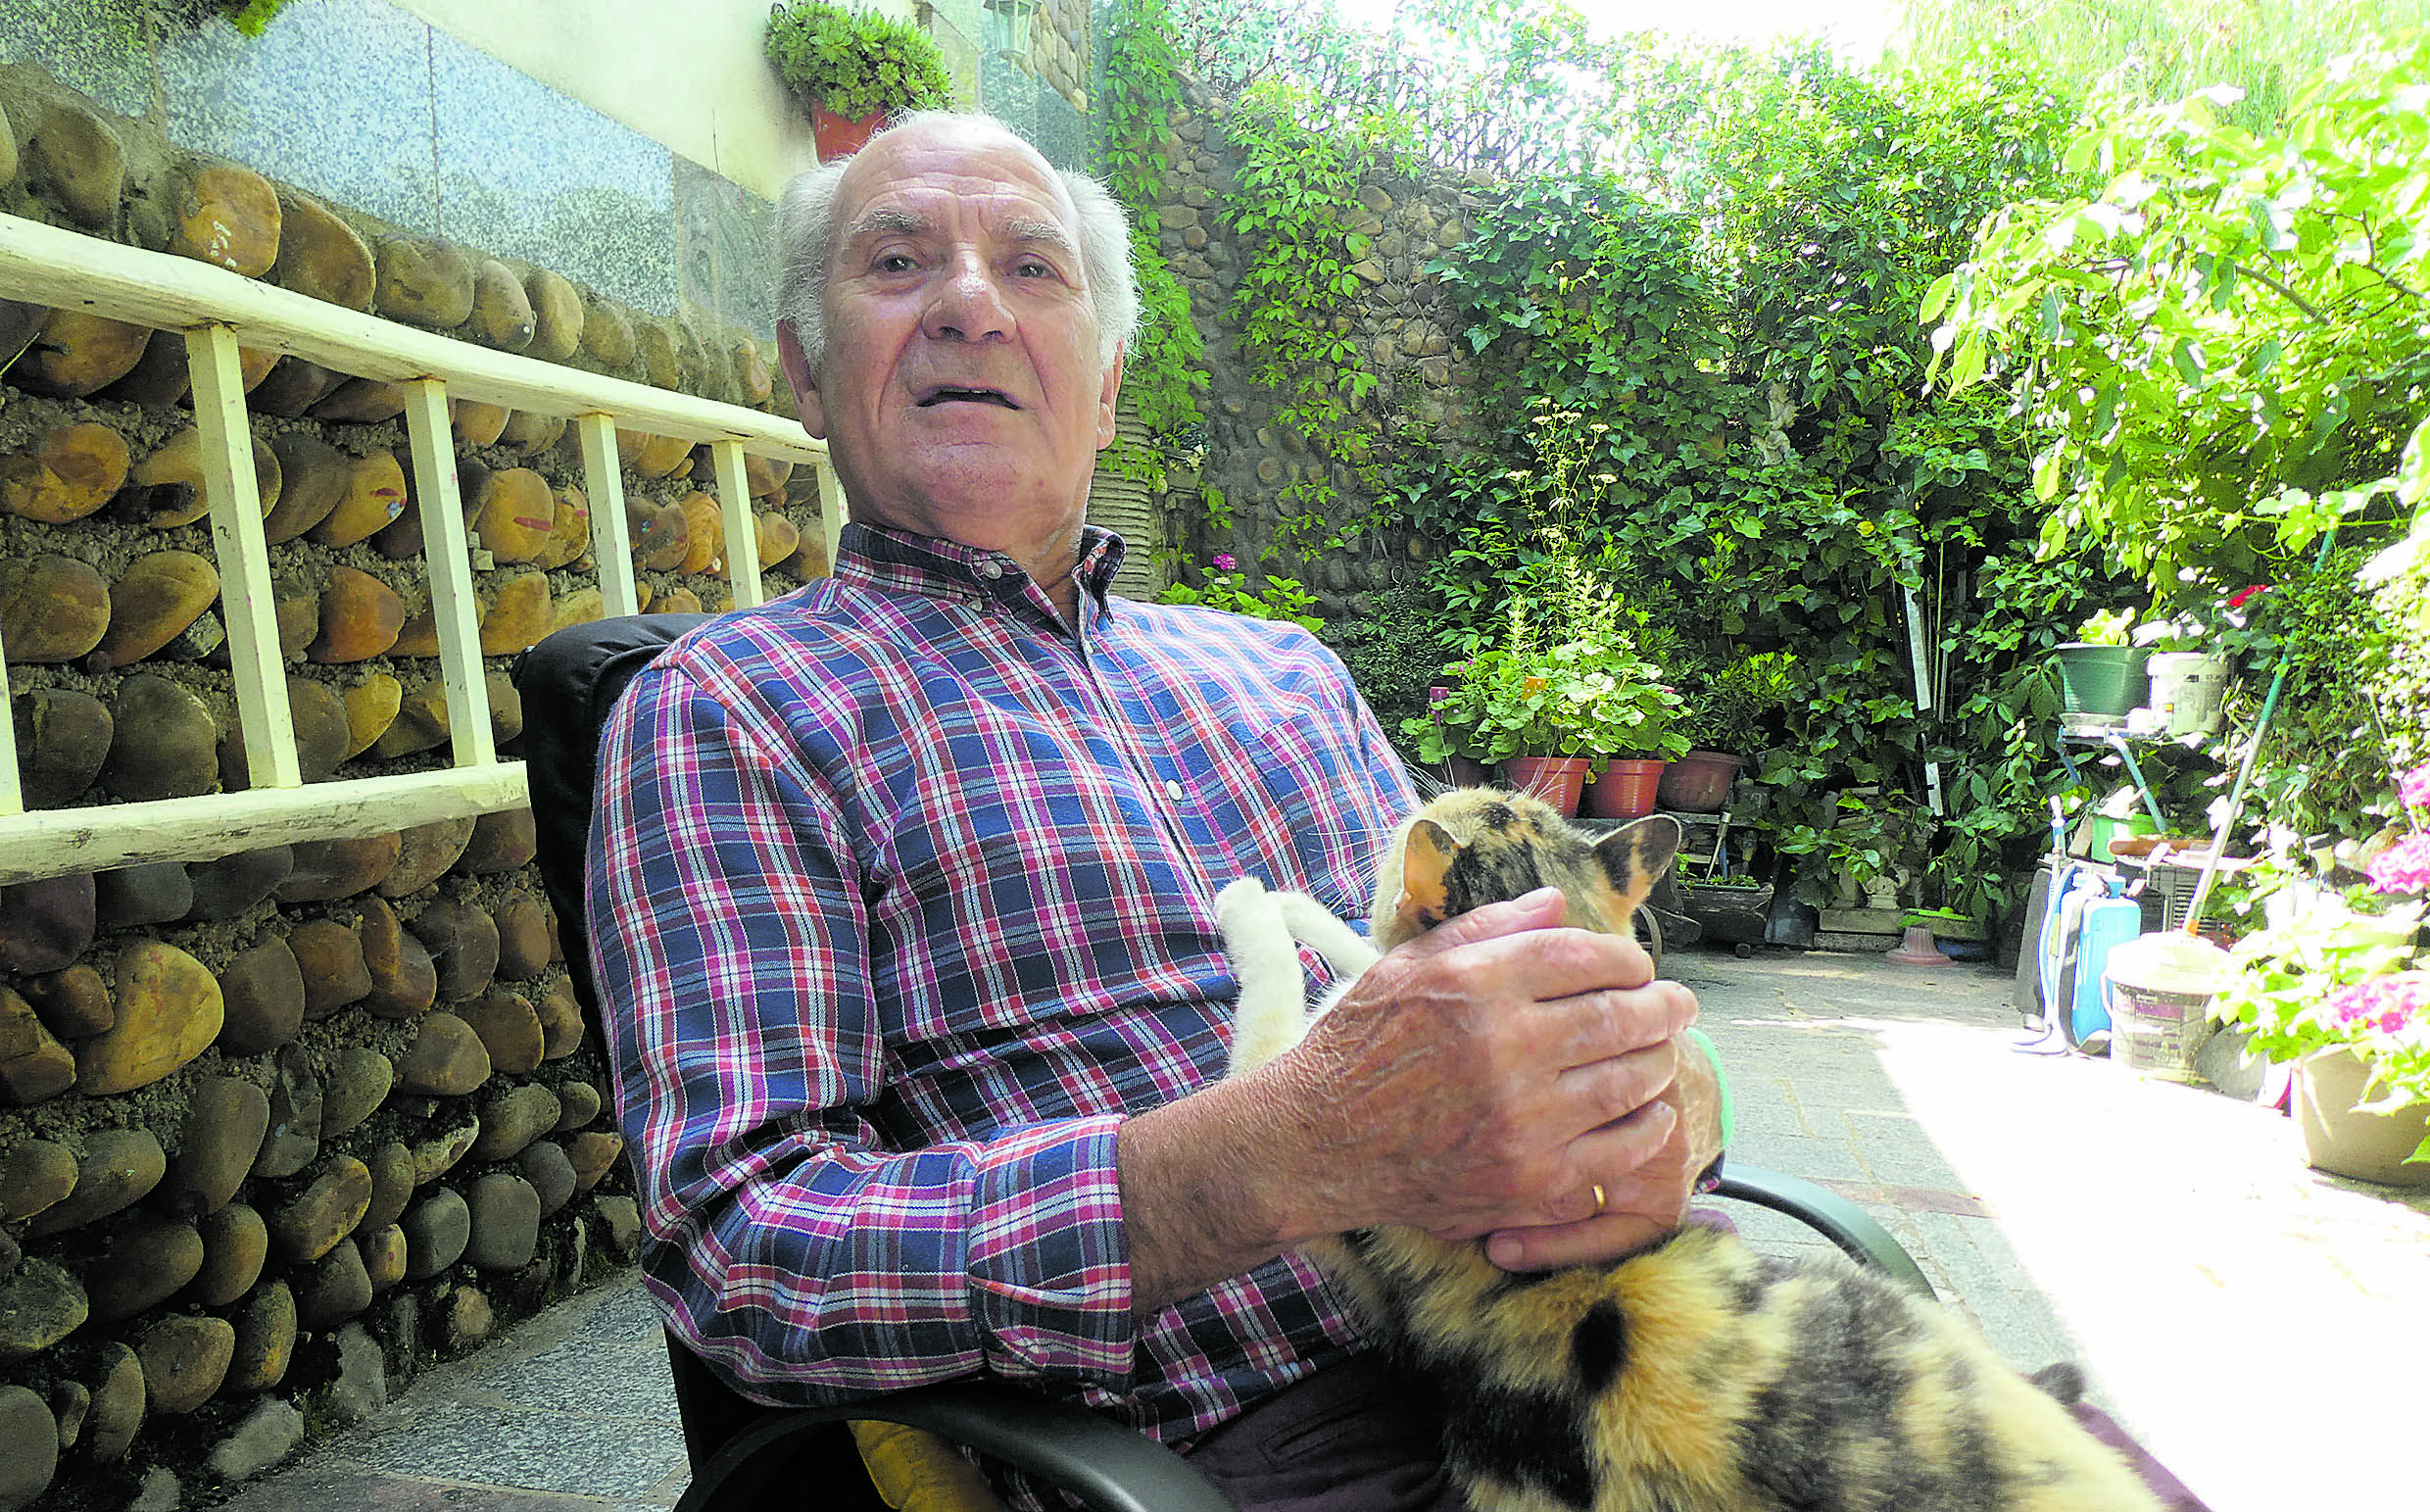 El artista con su gato; imprescindible ser vivo para acompañar los días. | GREGORIO FERNÁNDEZ CASTAÑÓN